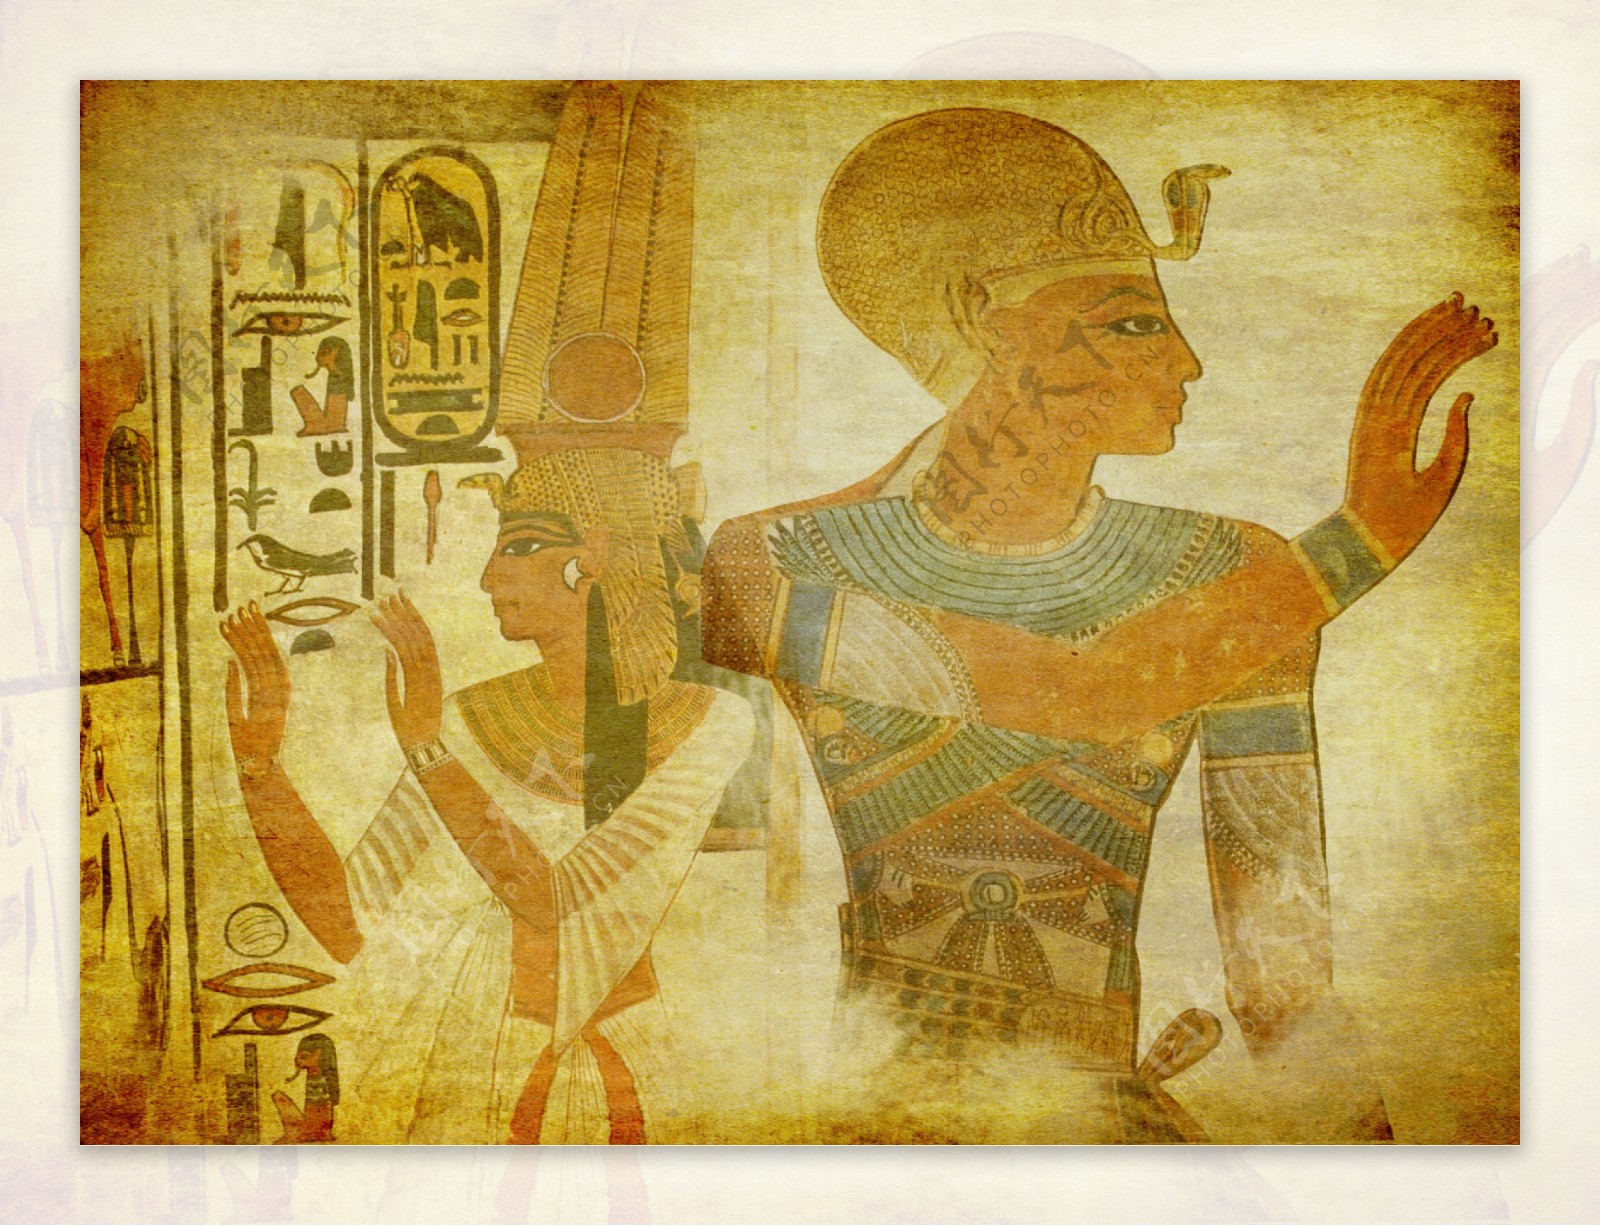 埃及法老与埃及王后图片